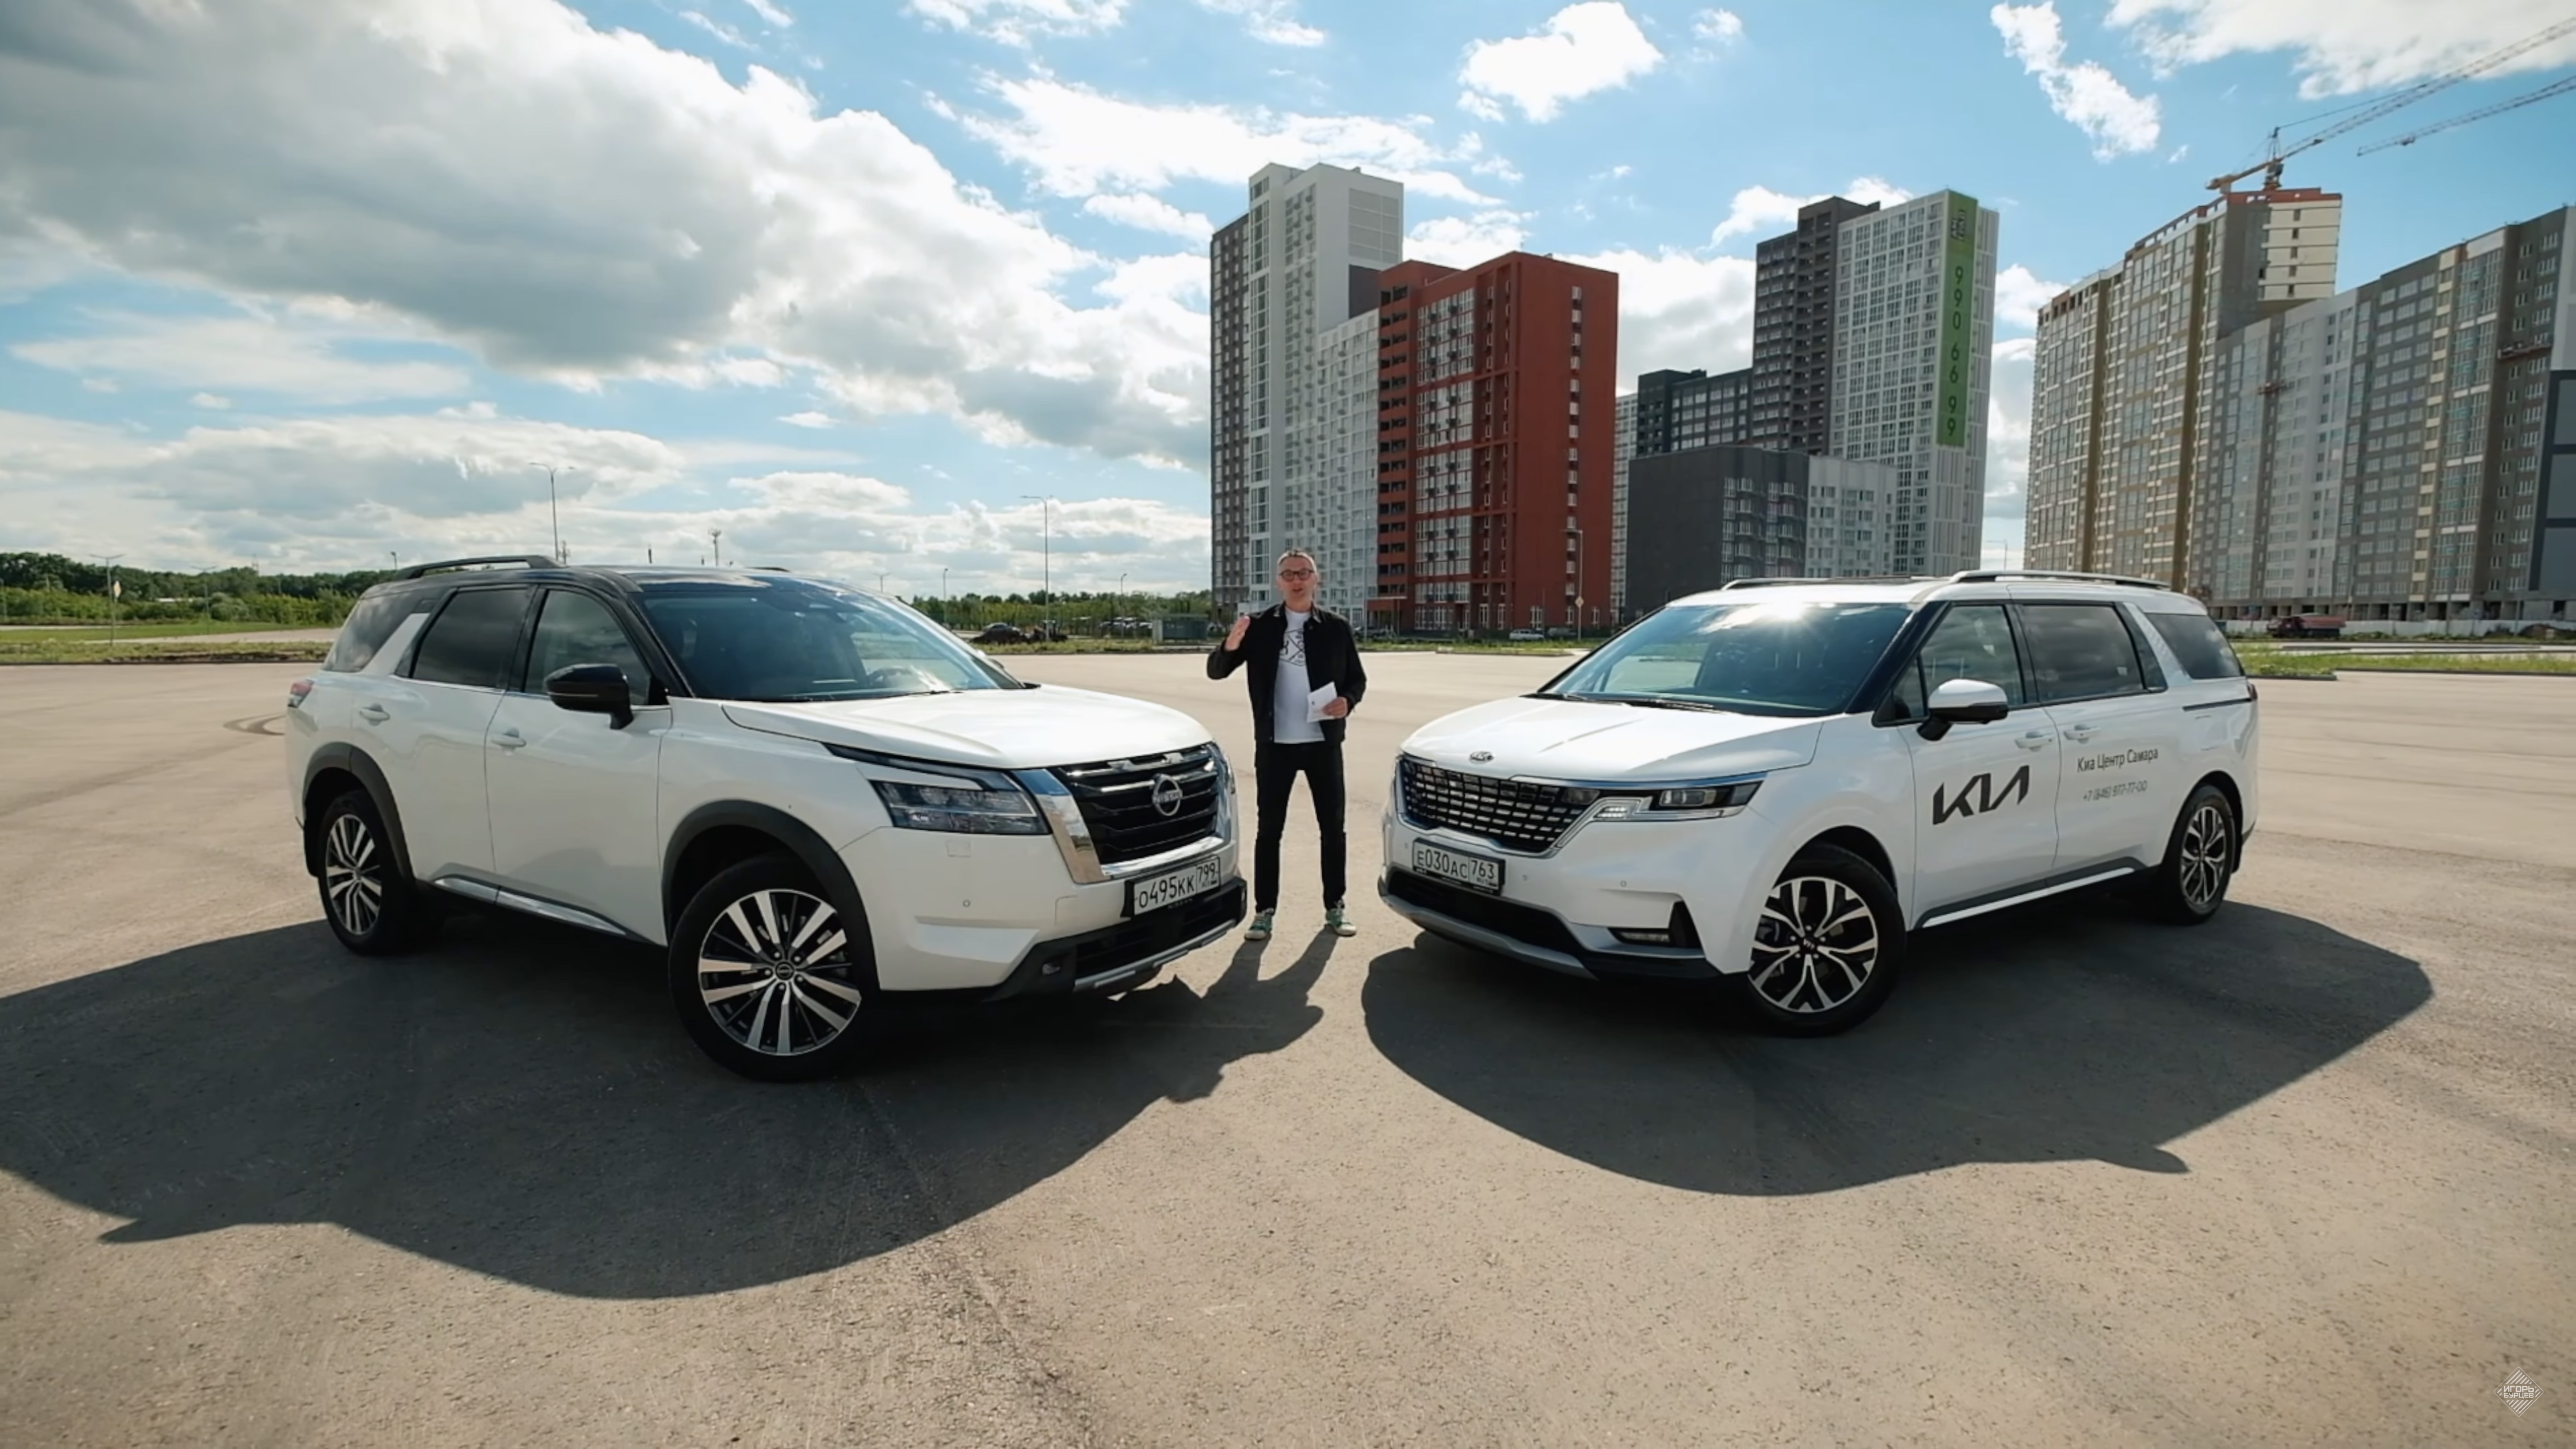 Анонс видео-теста Обойдемся без Китая: Kia Carnival и Nissan Pathfinder - Ультра семейная парочка.